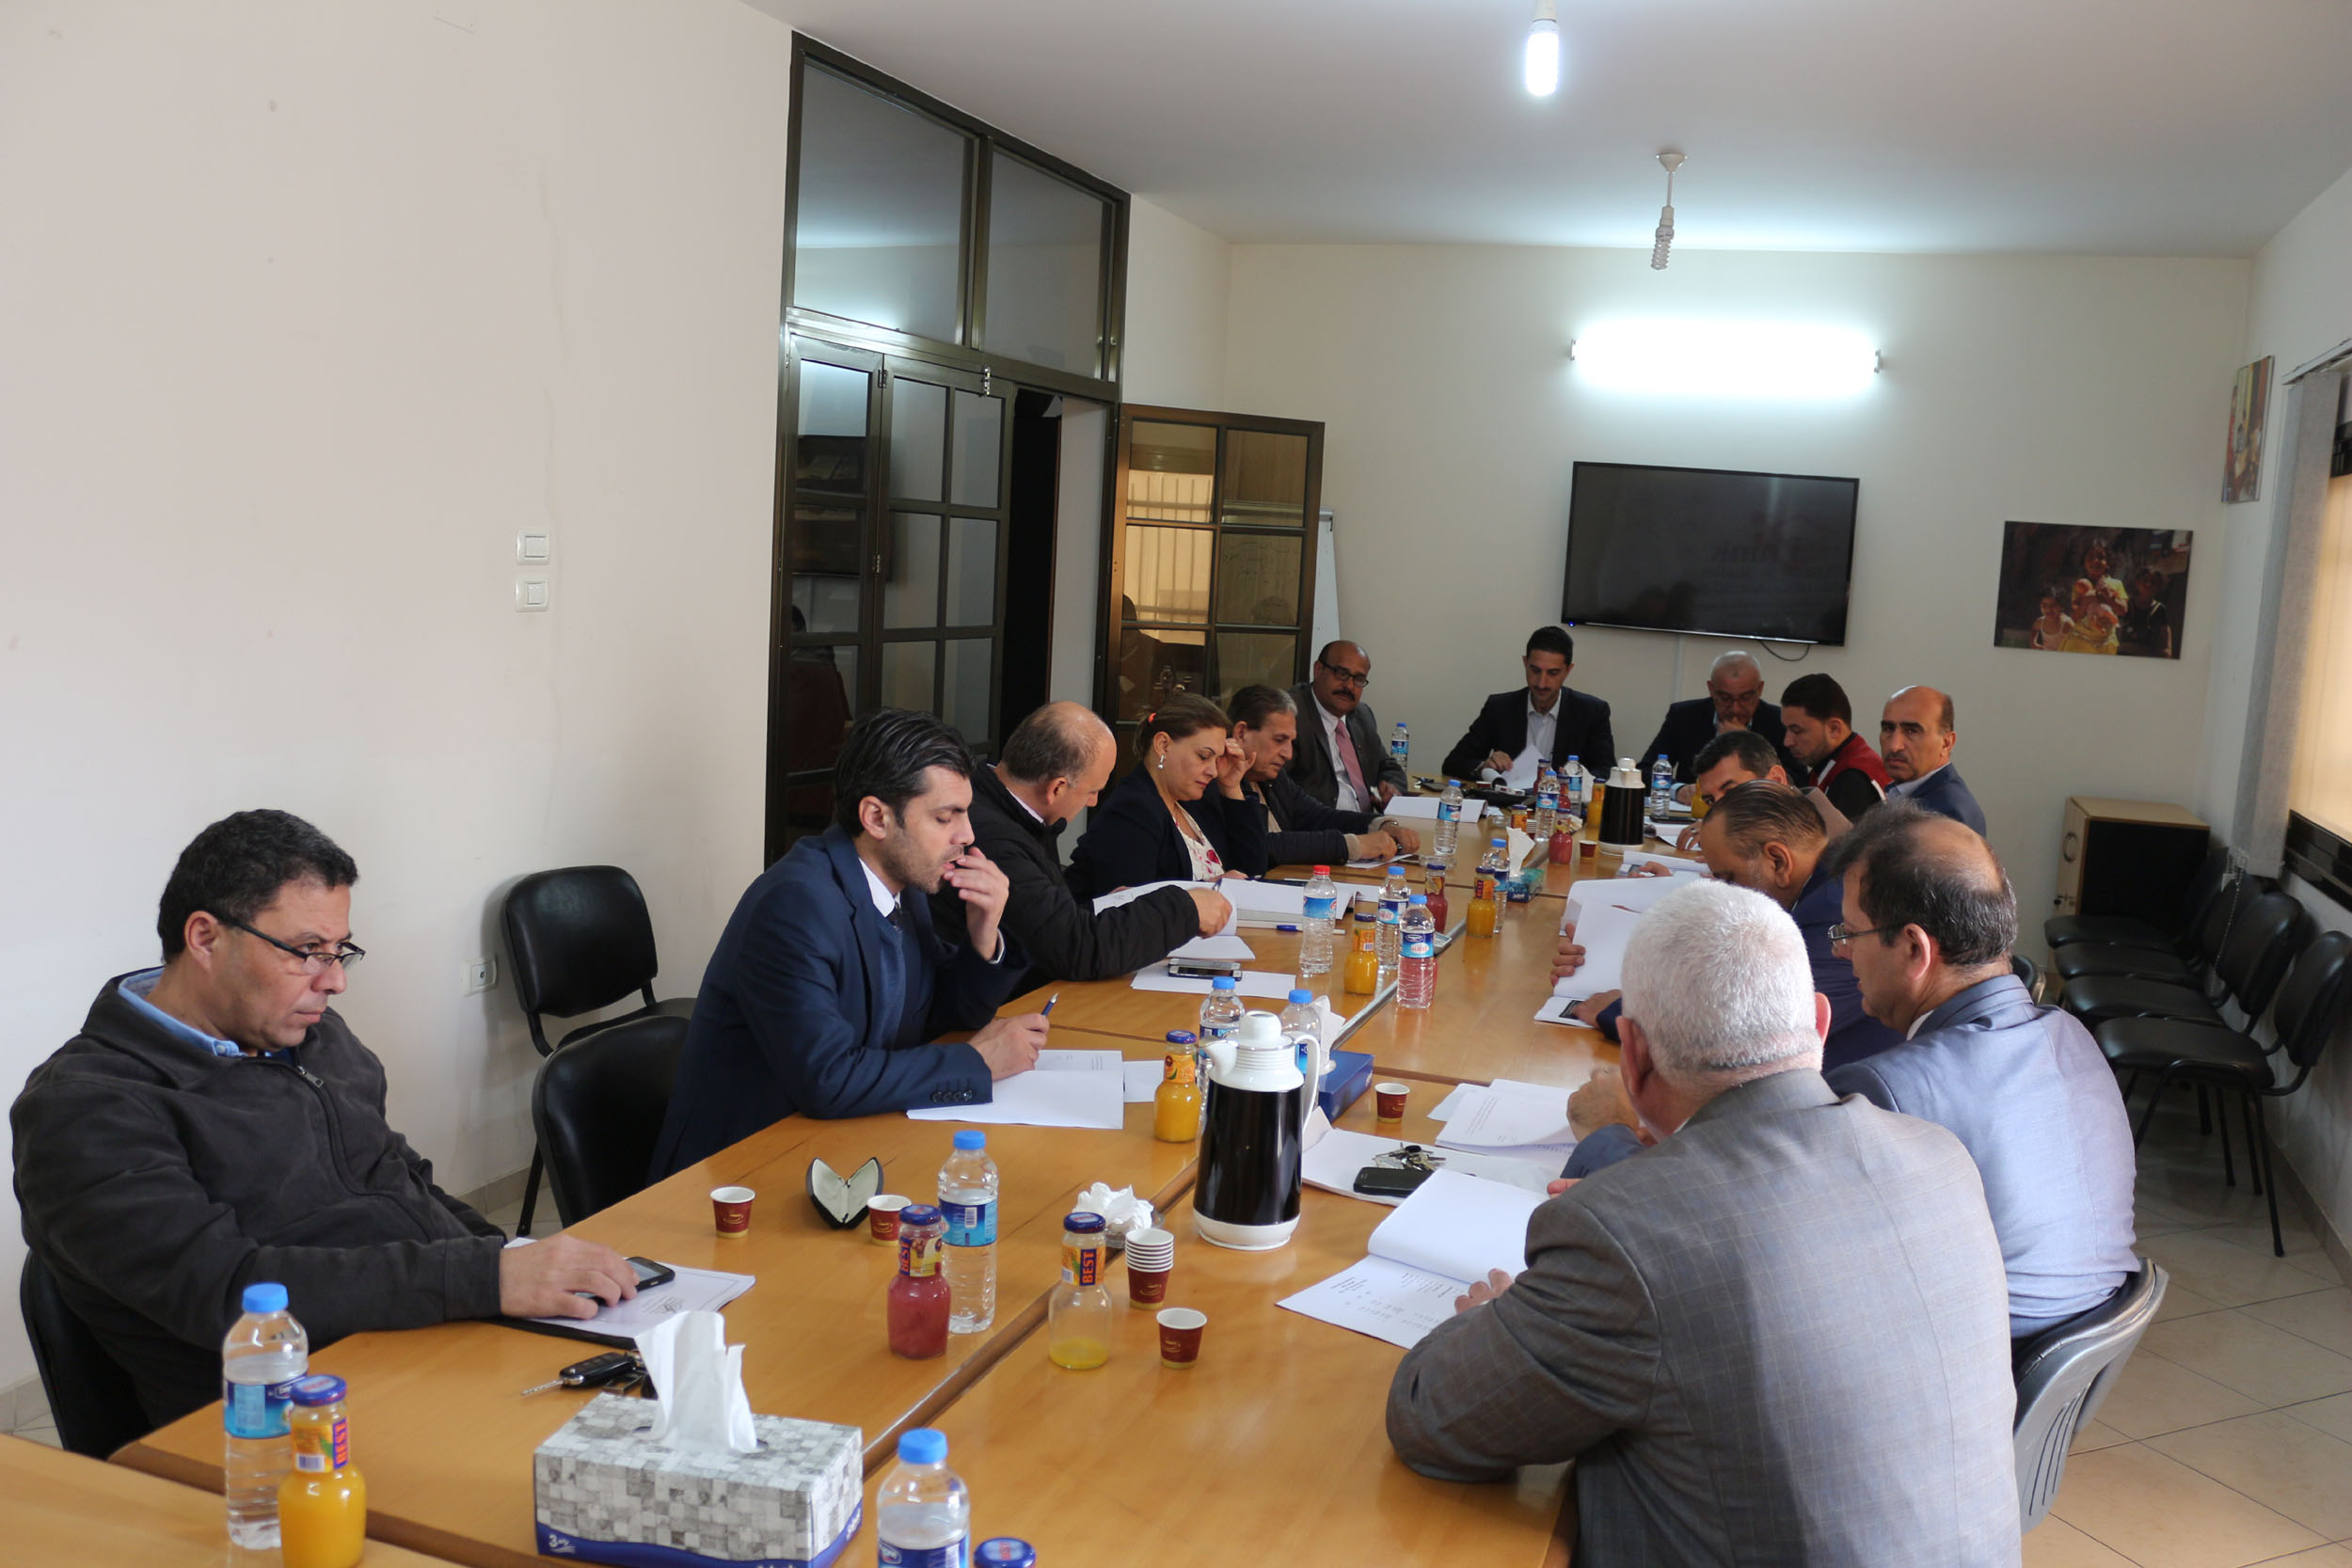 صورة بحضور 12 عضواً بال ثينك للدراسات الاستراتيجية تنتخب مجلس ادارة جديد